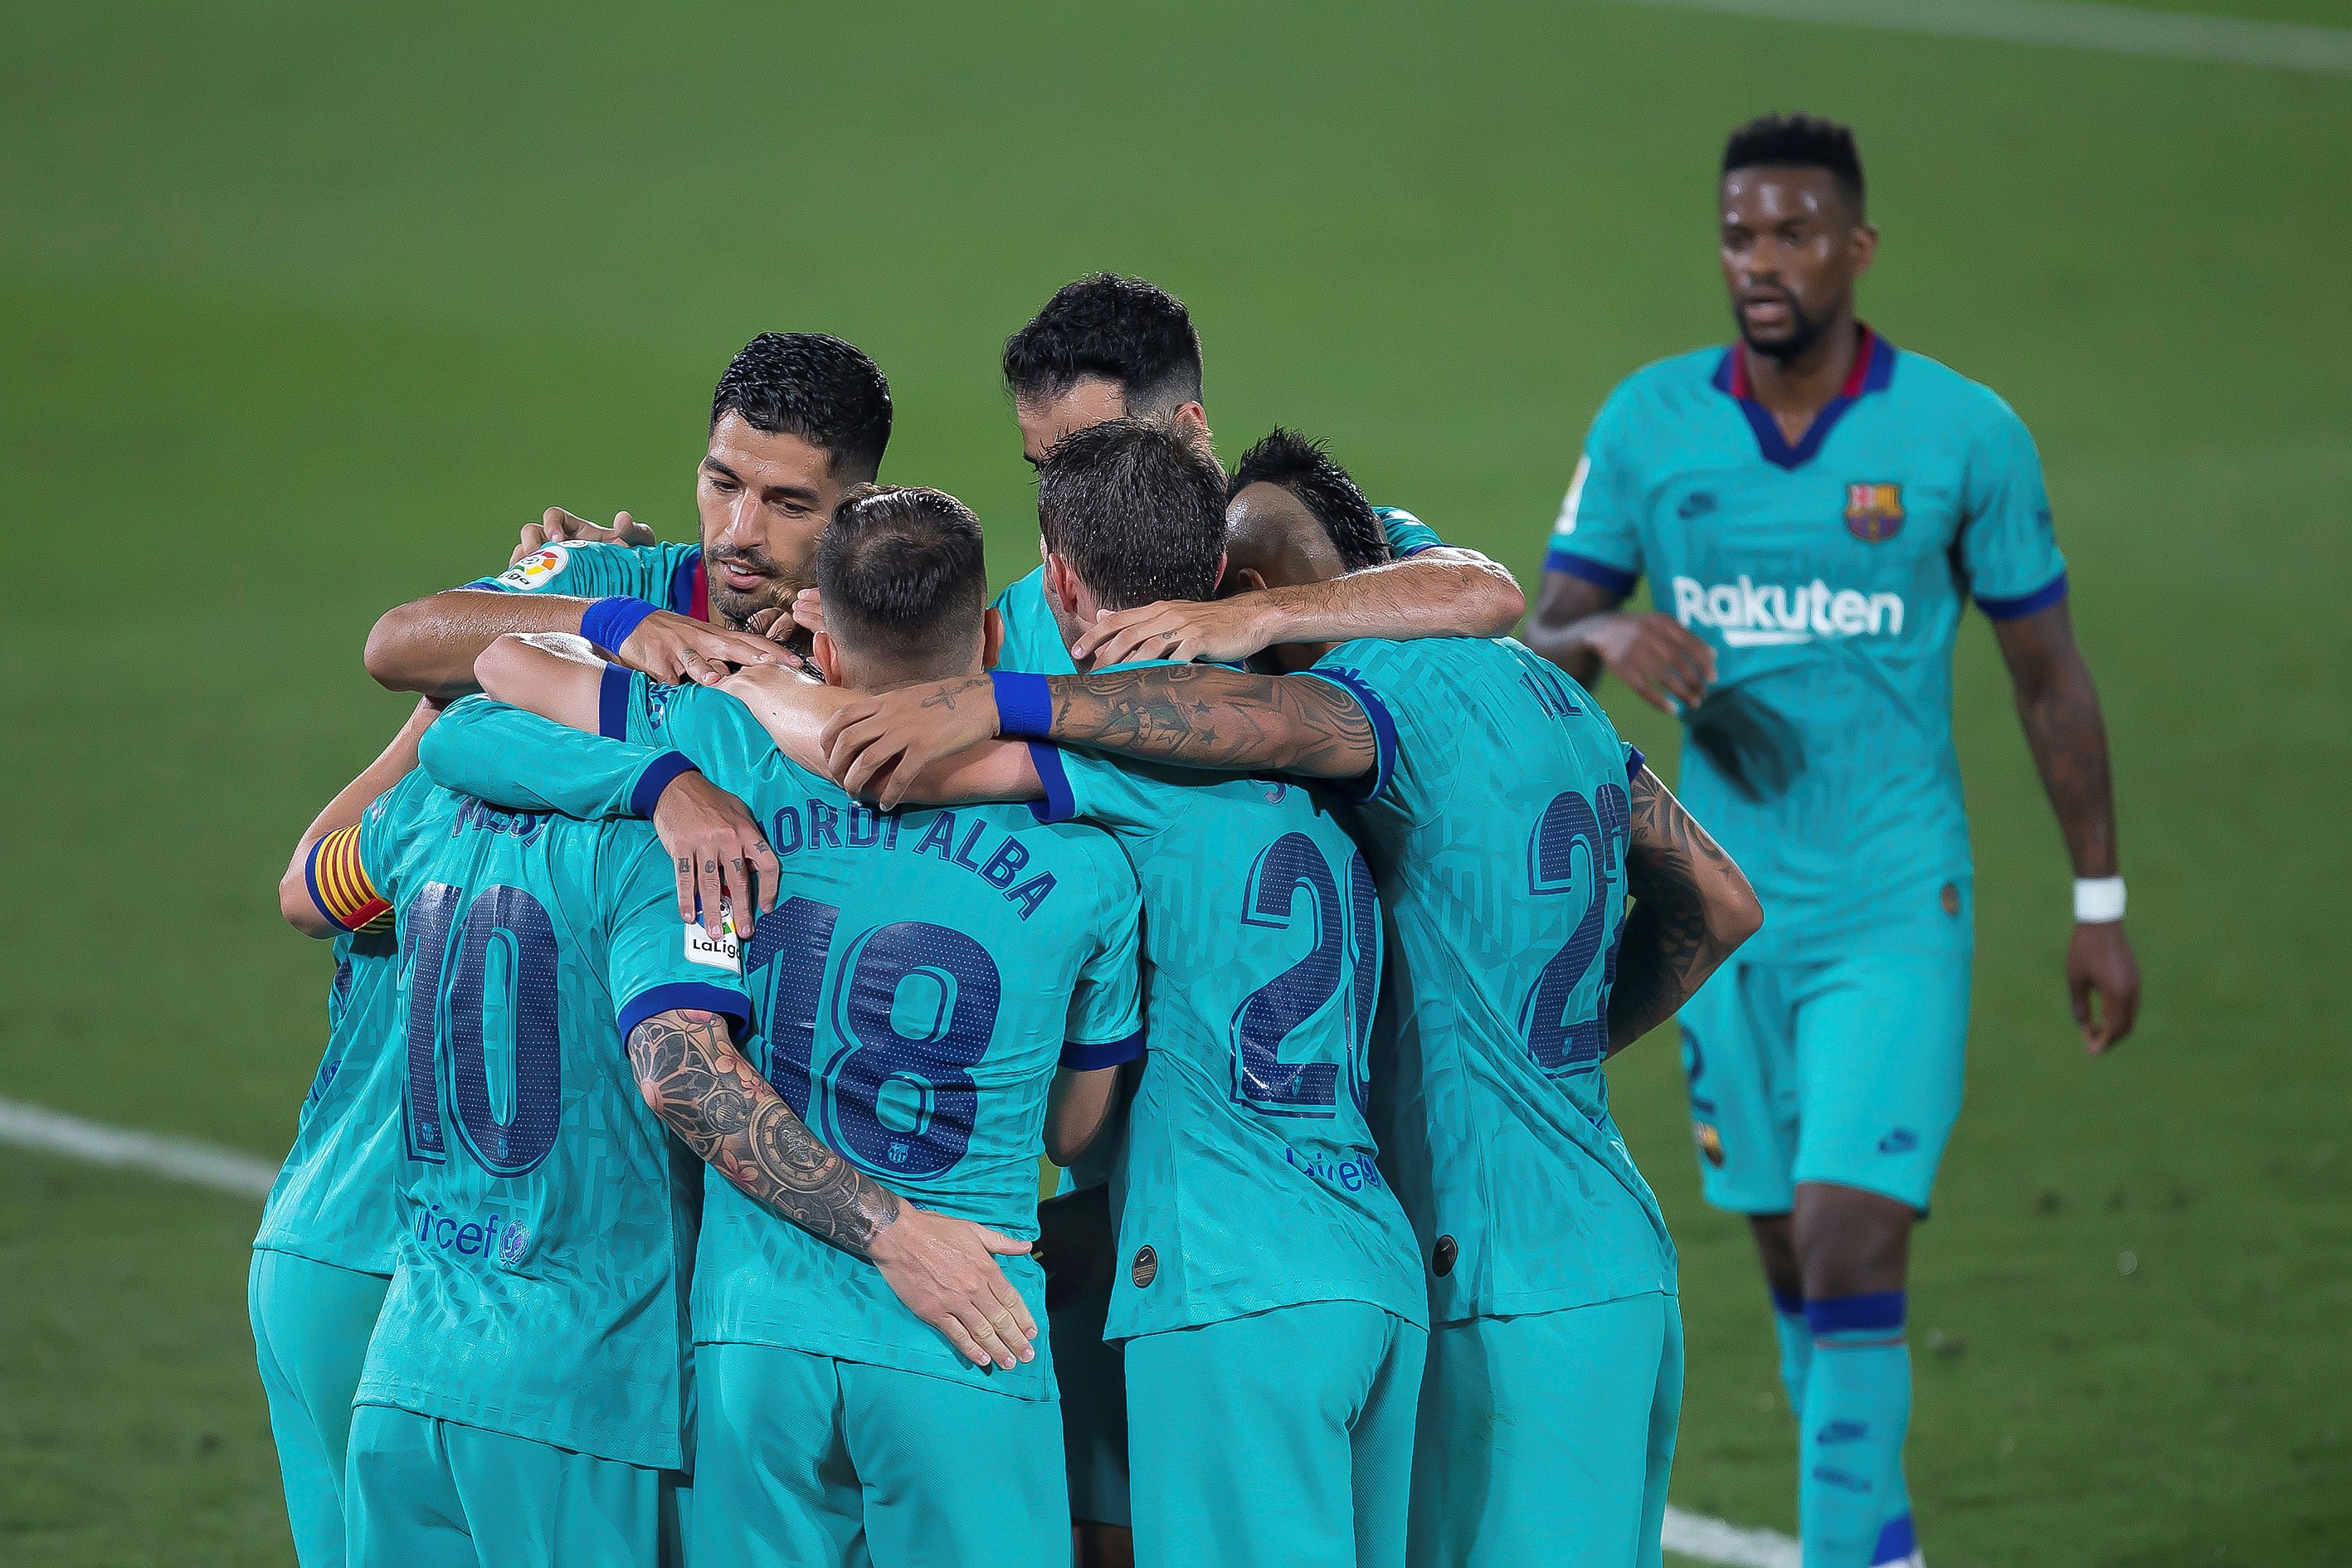 Los jugadores del FC Barcelona celebran el tercer gol del equipo. (Foto Prensa Libre: EFE)